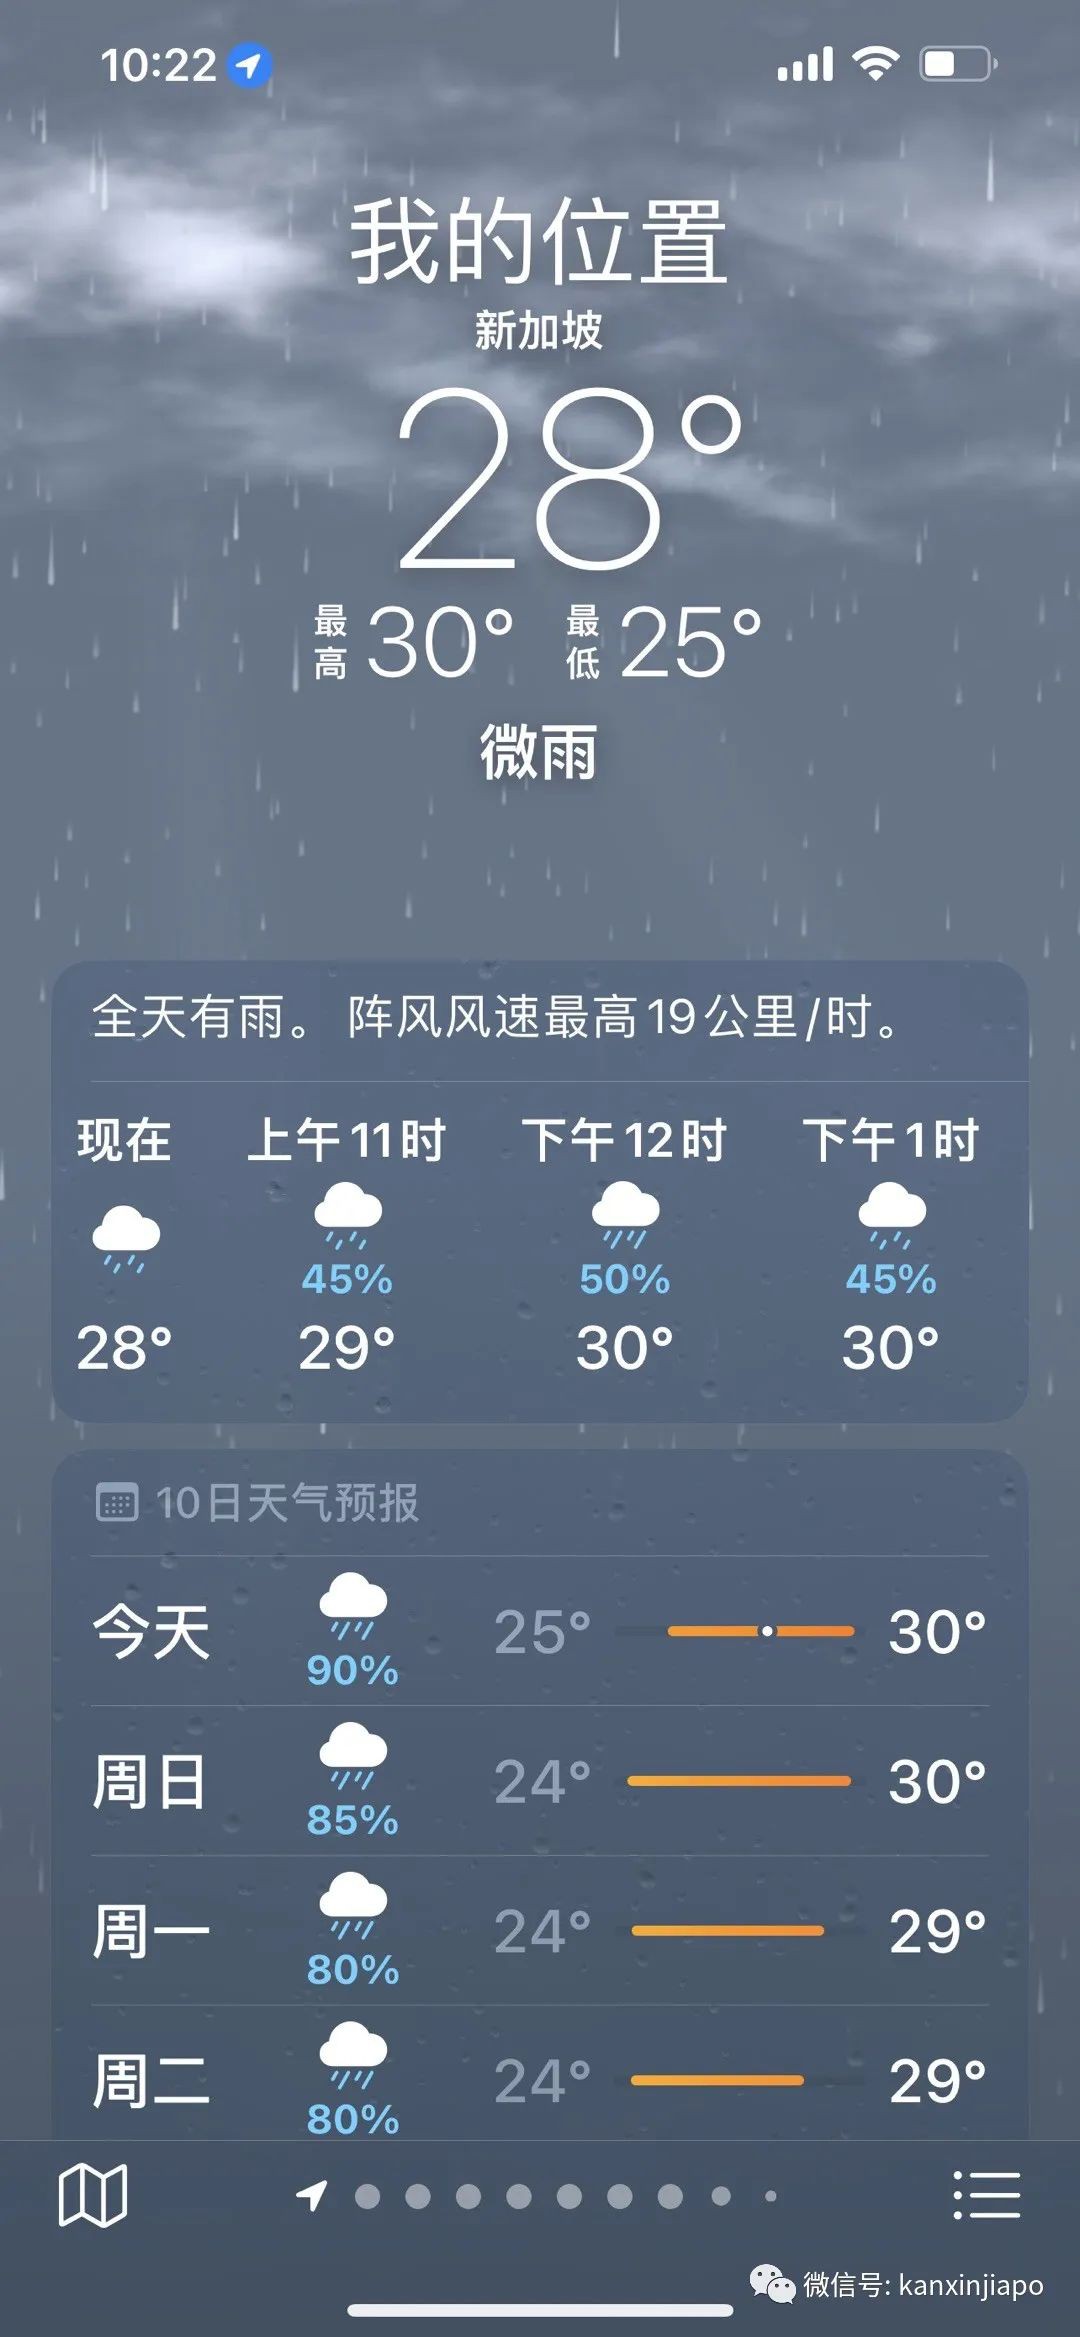 “上午晴空万里，下午疾风骤雨！”新加坡的雨已经下了半个月了，还将继续